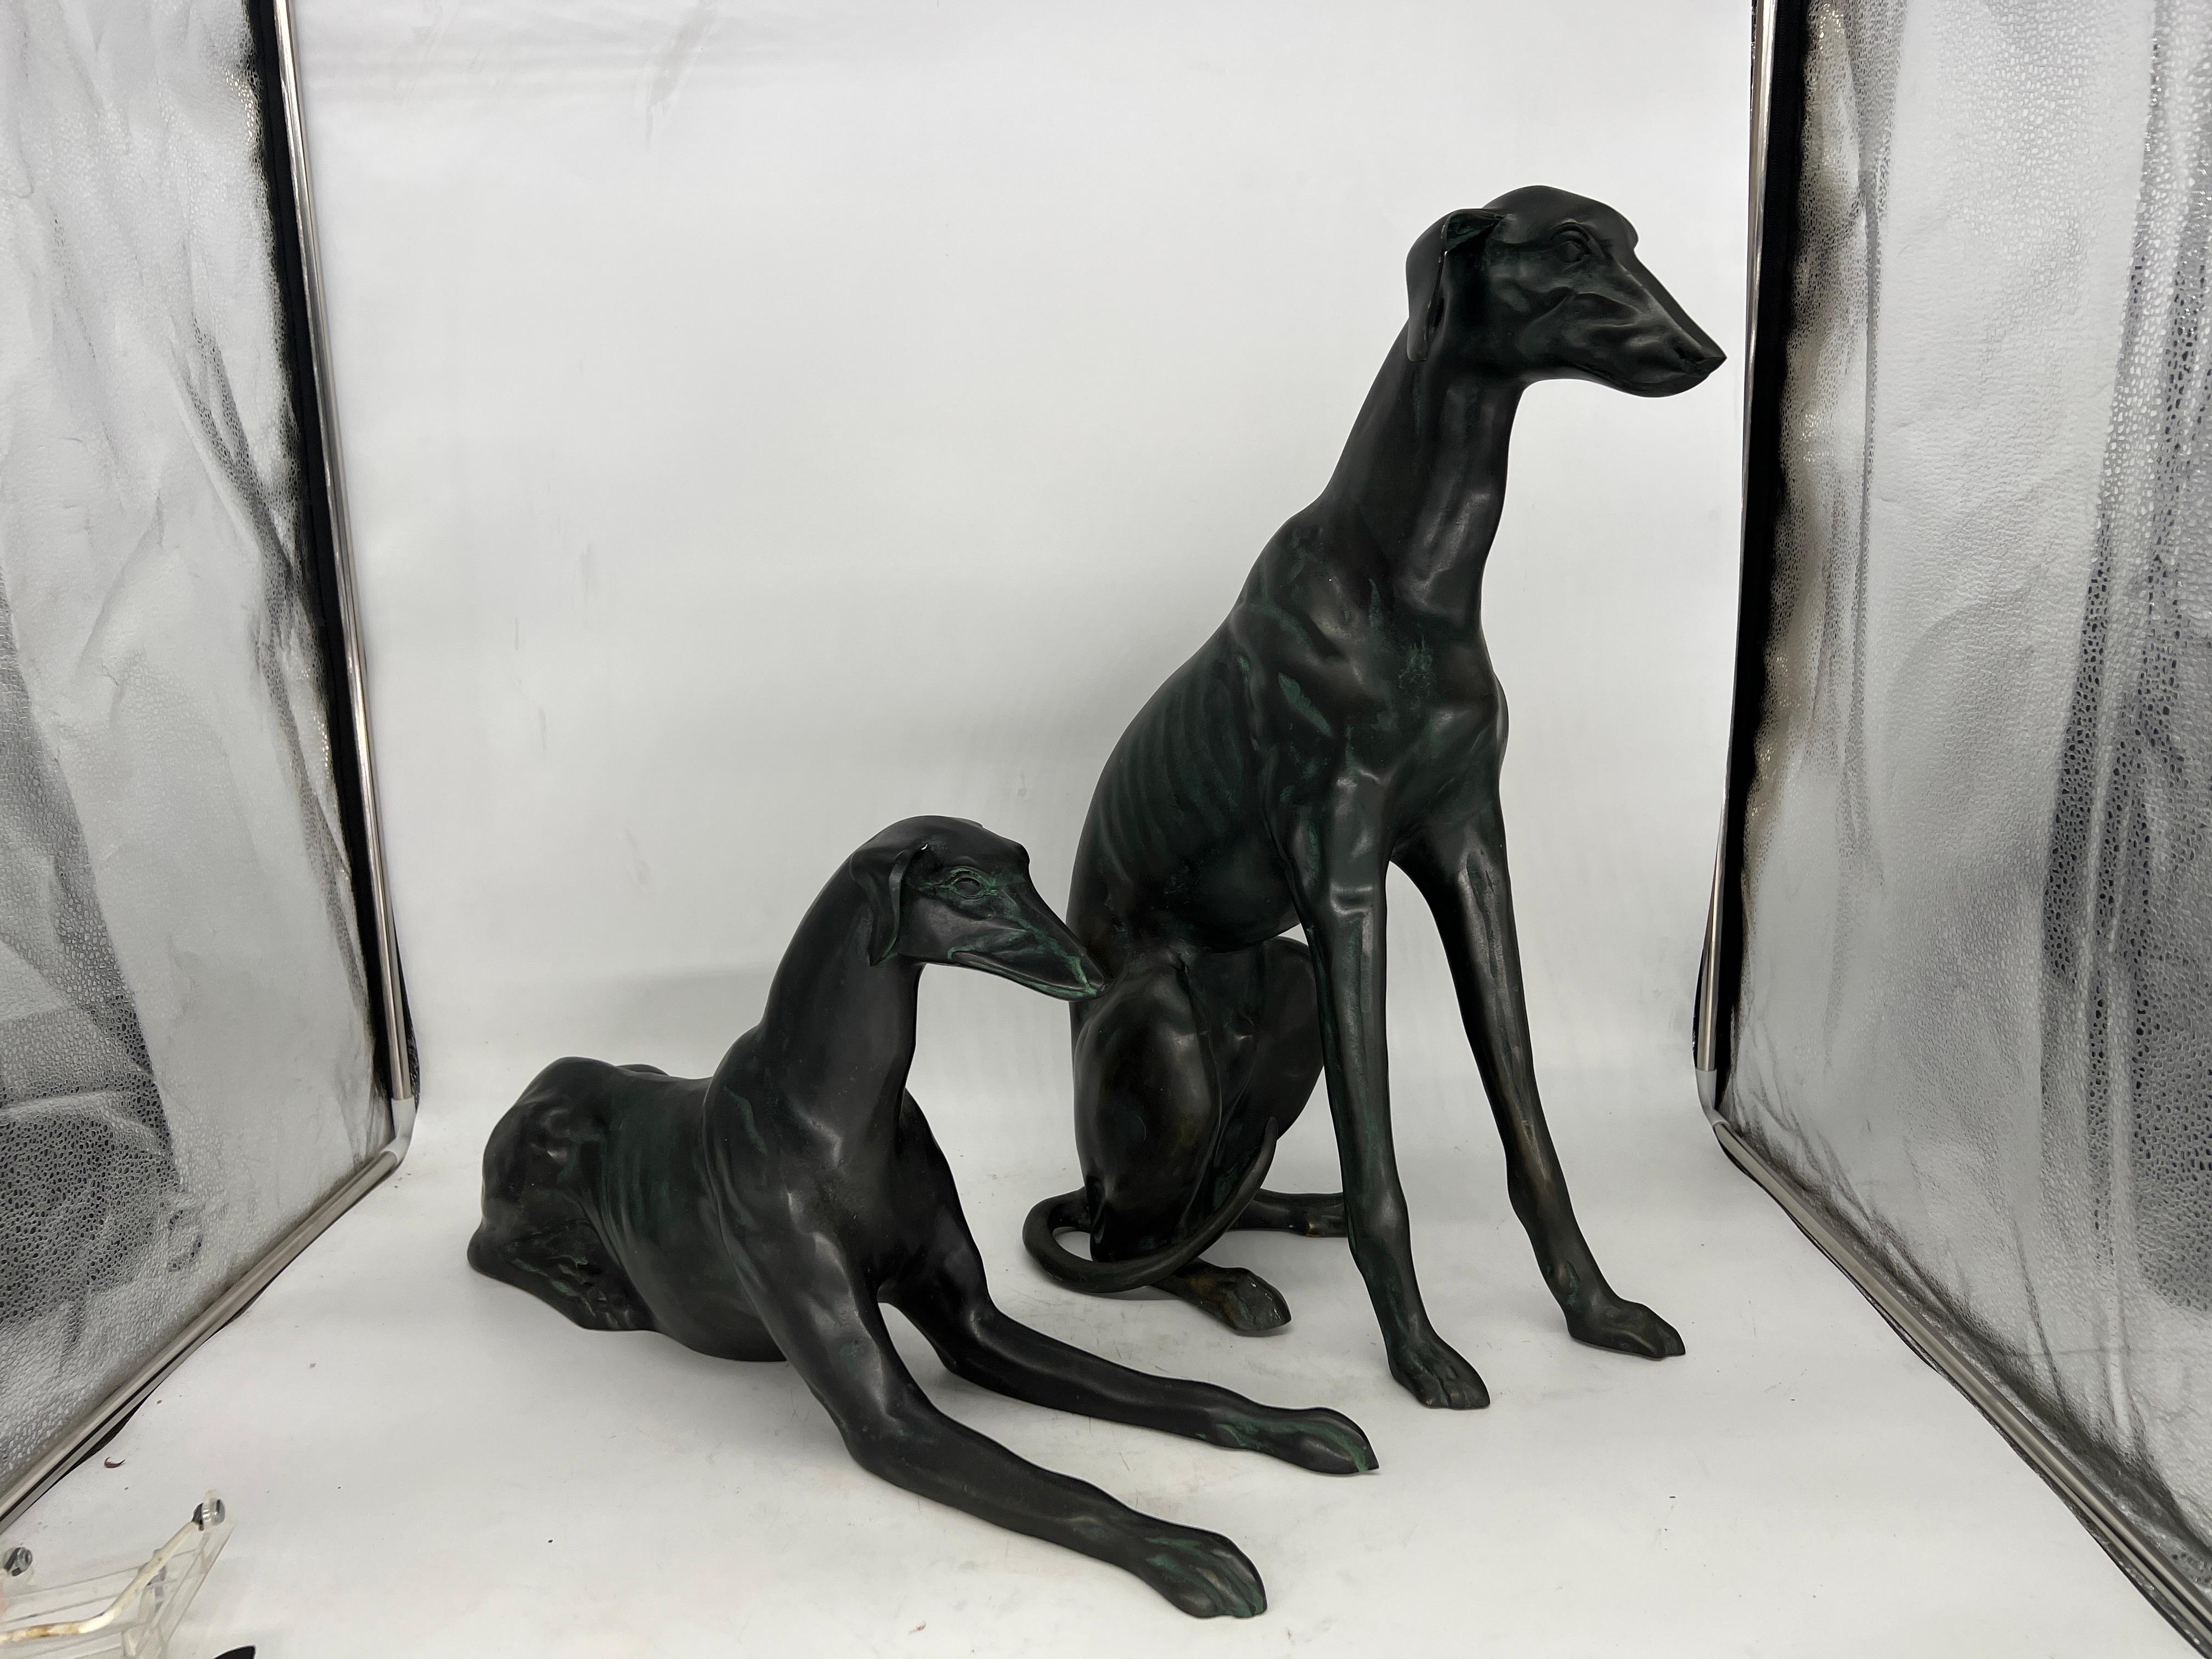 Paire de statues de chien Whippet en bronze lourd.

Chaque statue est coulée dans un bronze de bonne qualité dont la surface présente une patine verte. Les whippets mesurent :
Lg Dog - 22.75 h 8 w 14.5 d
chien sm - 12,25 h 23 p 8 w